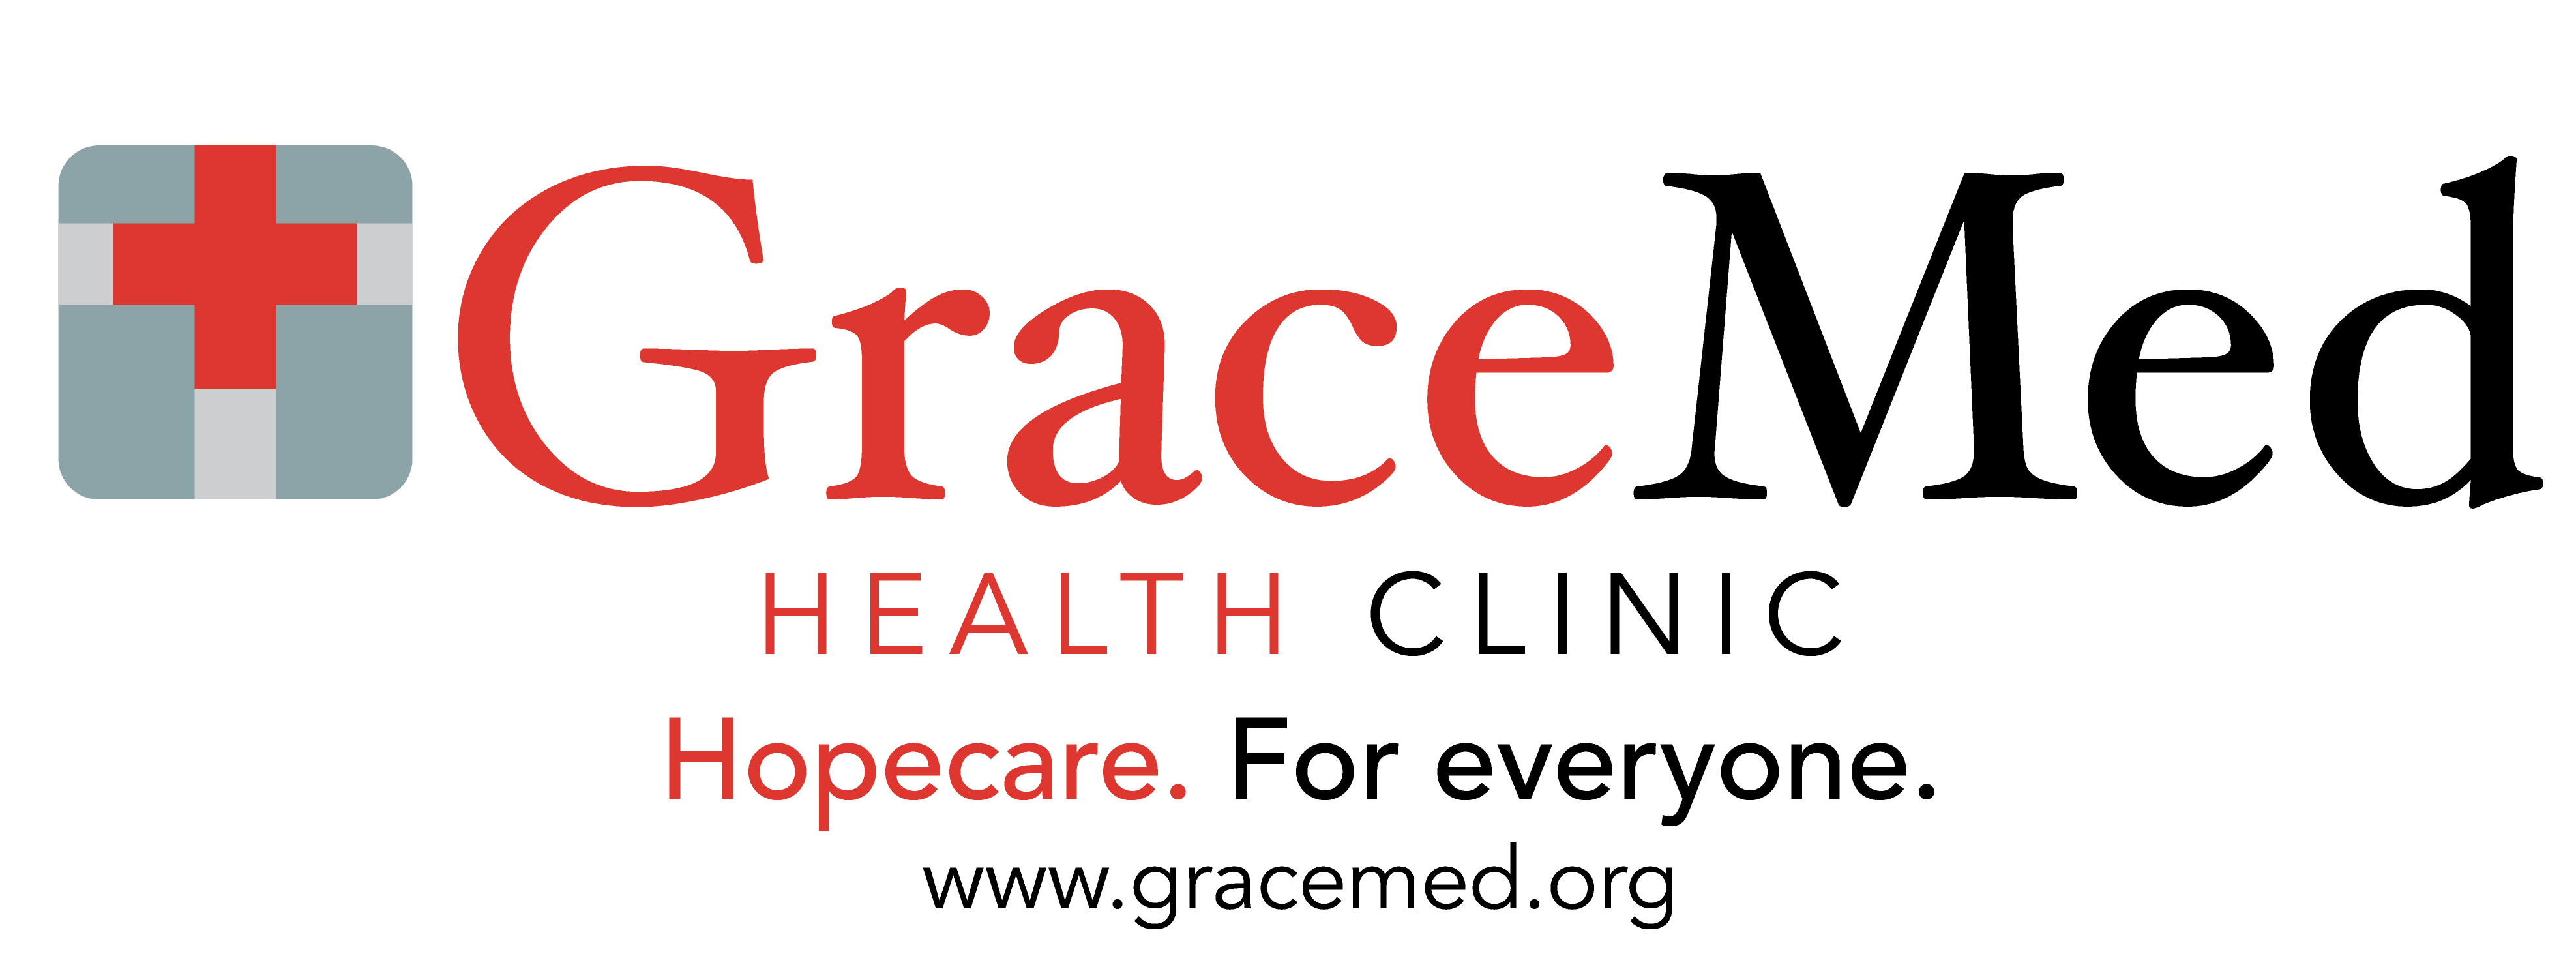 GraceMed Health Clinic Inc logo